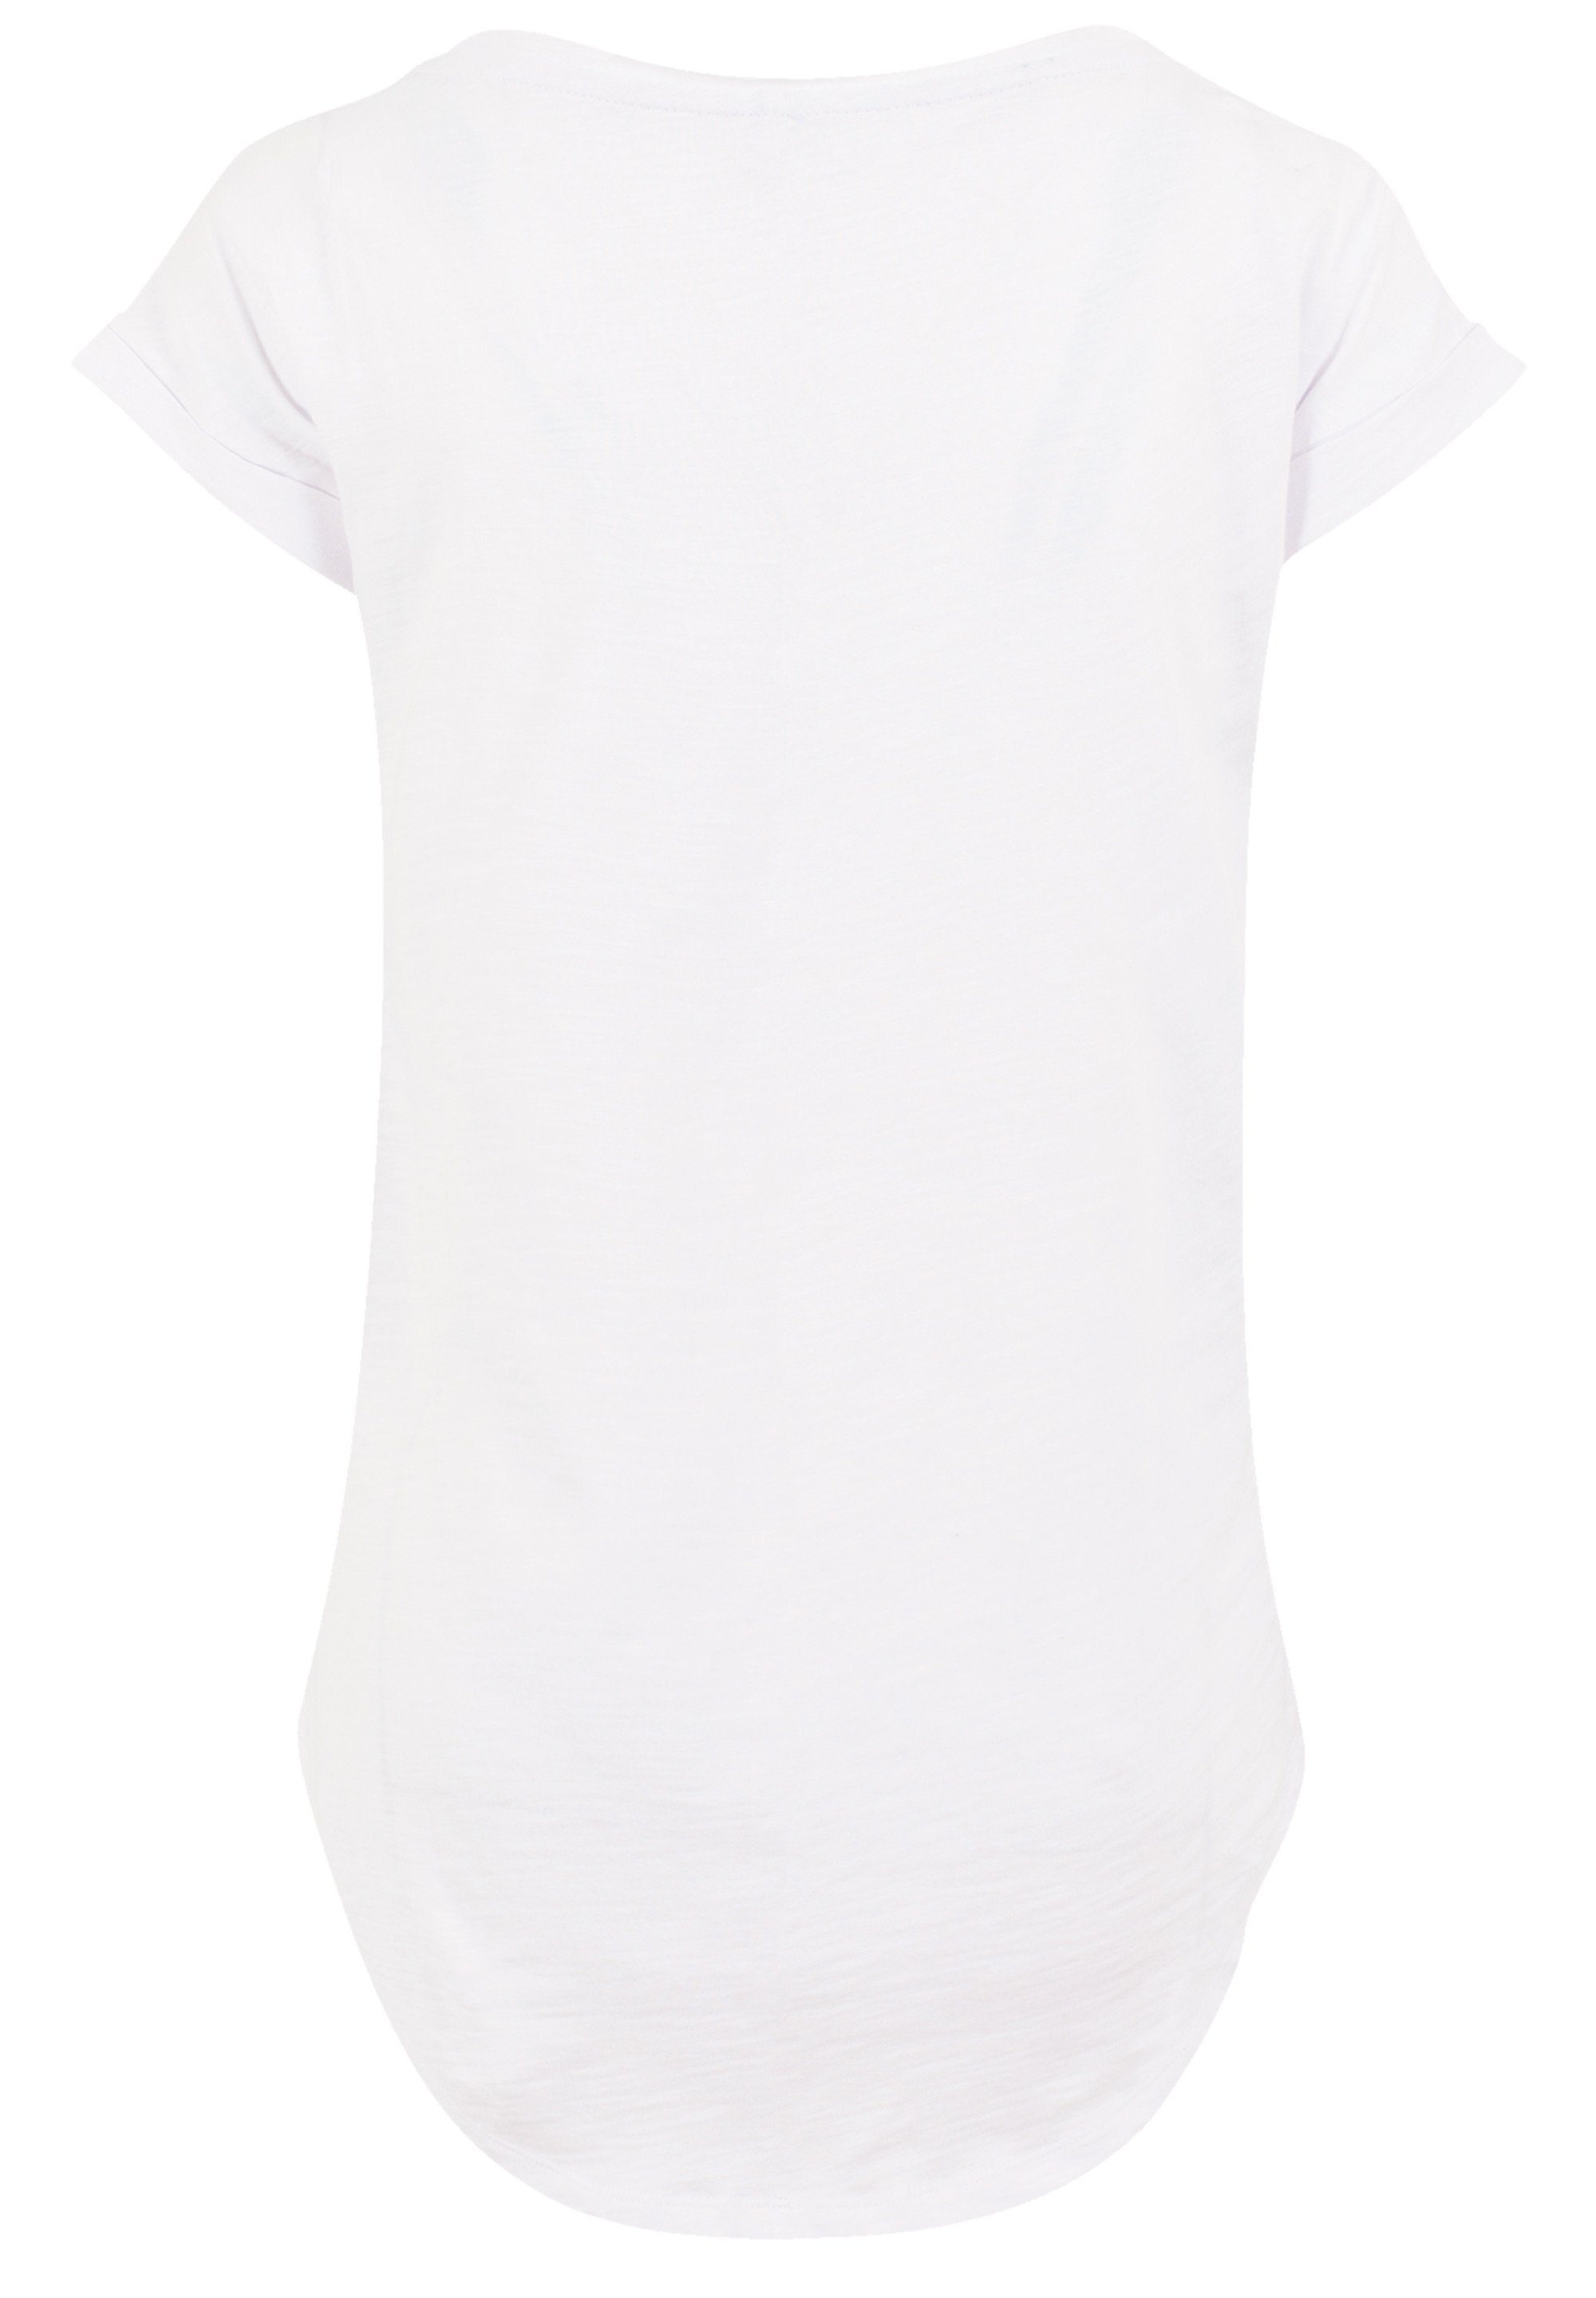 F4NT4STIC T-Shirt PLUS SIZE Sehr Baumwollstoff mit Baltic Print, weicher Tragekomfort hohem Coast